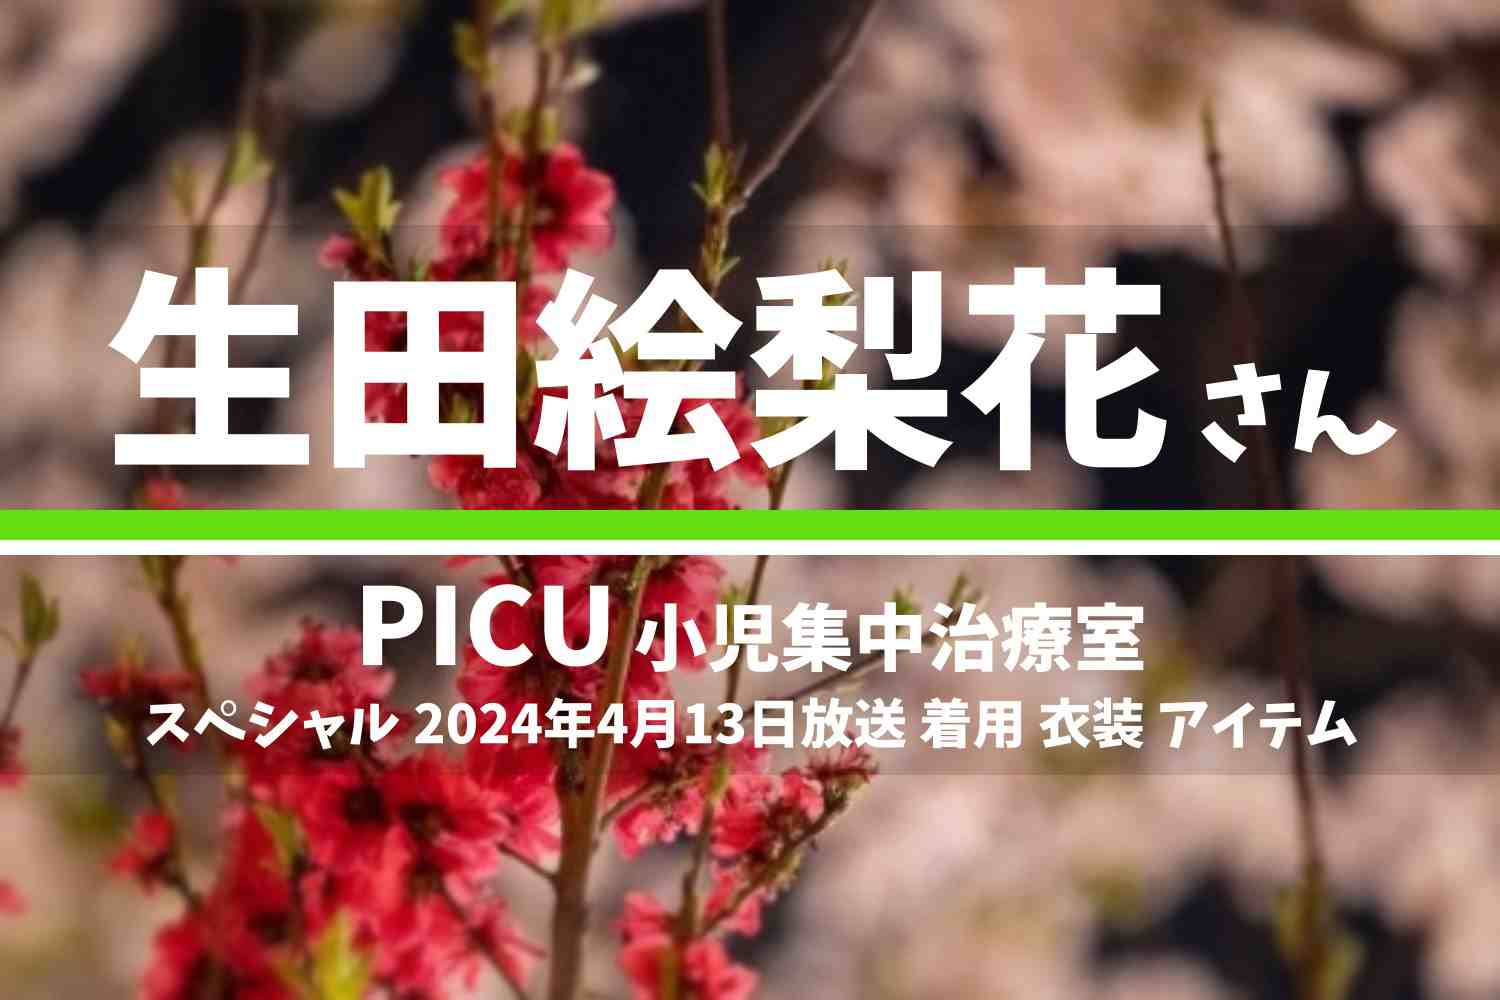 PICU 小児集中治療室 生田絵梨花さん テレビドラマ 衣装 2024年4月13日放送